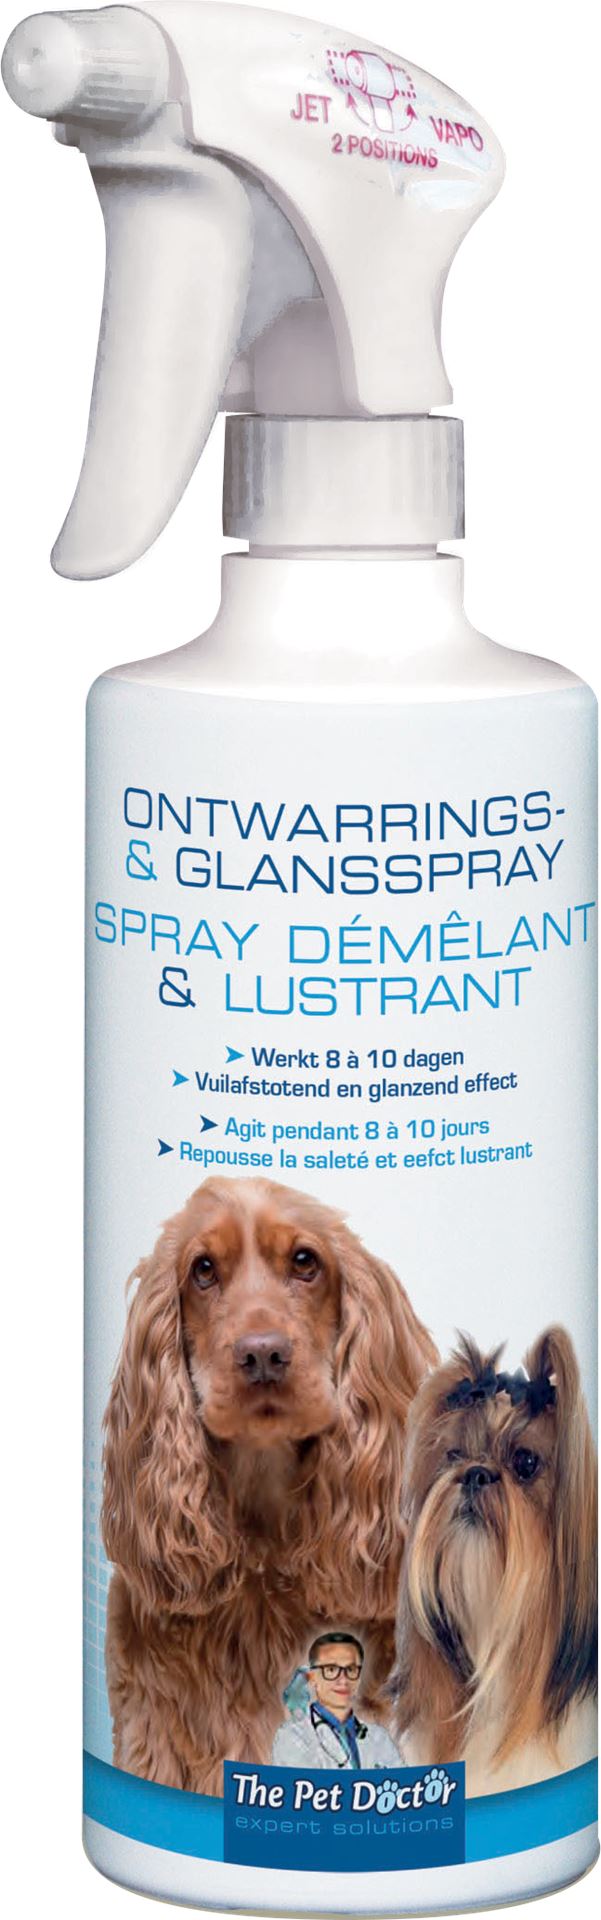 TPD-Ontwarrings-en-Glansspray-Hond-500ml